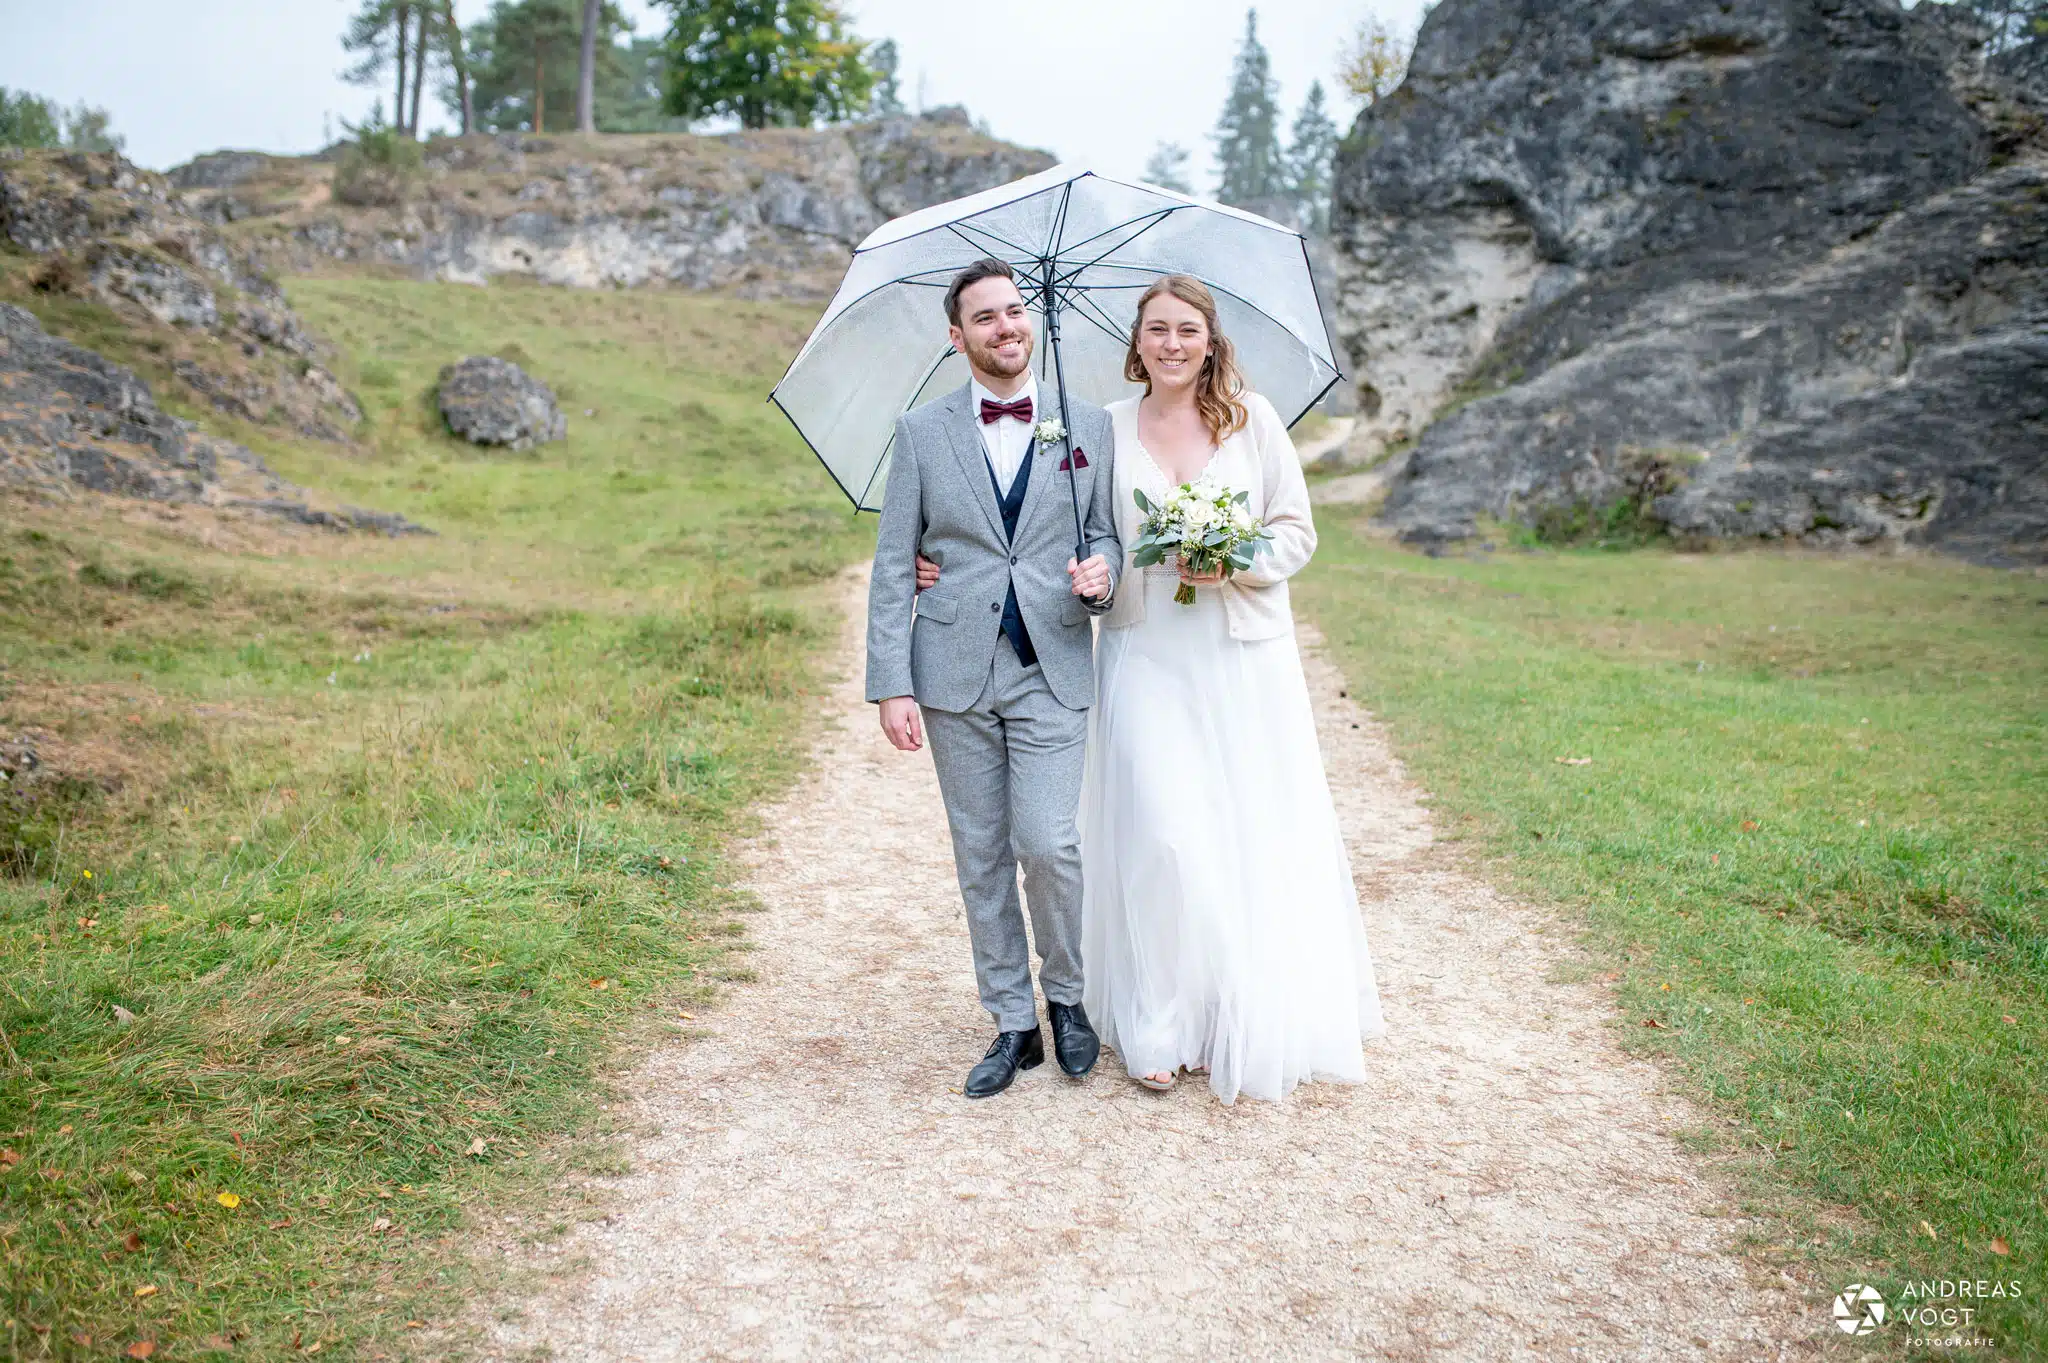 Brautpaarfotos im Wental mit Wiebke und Alex - Fotograf Andreas Vogt